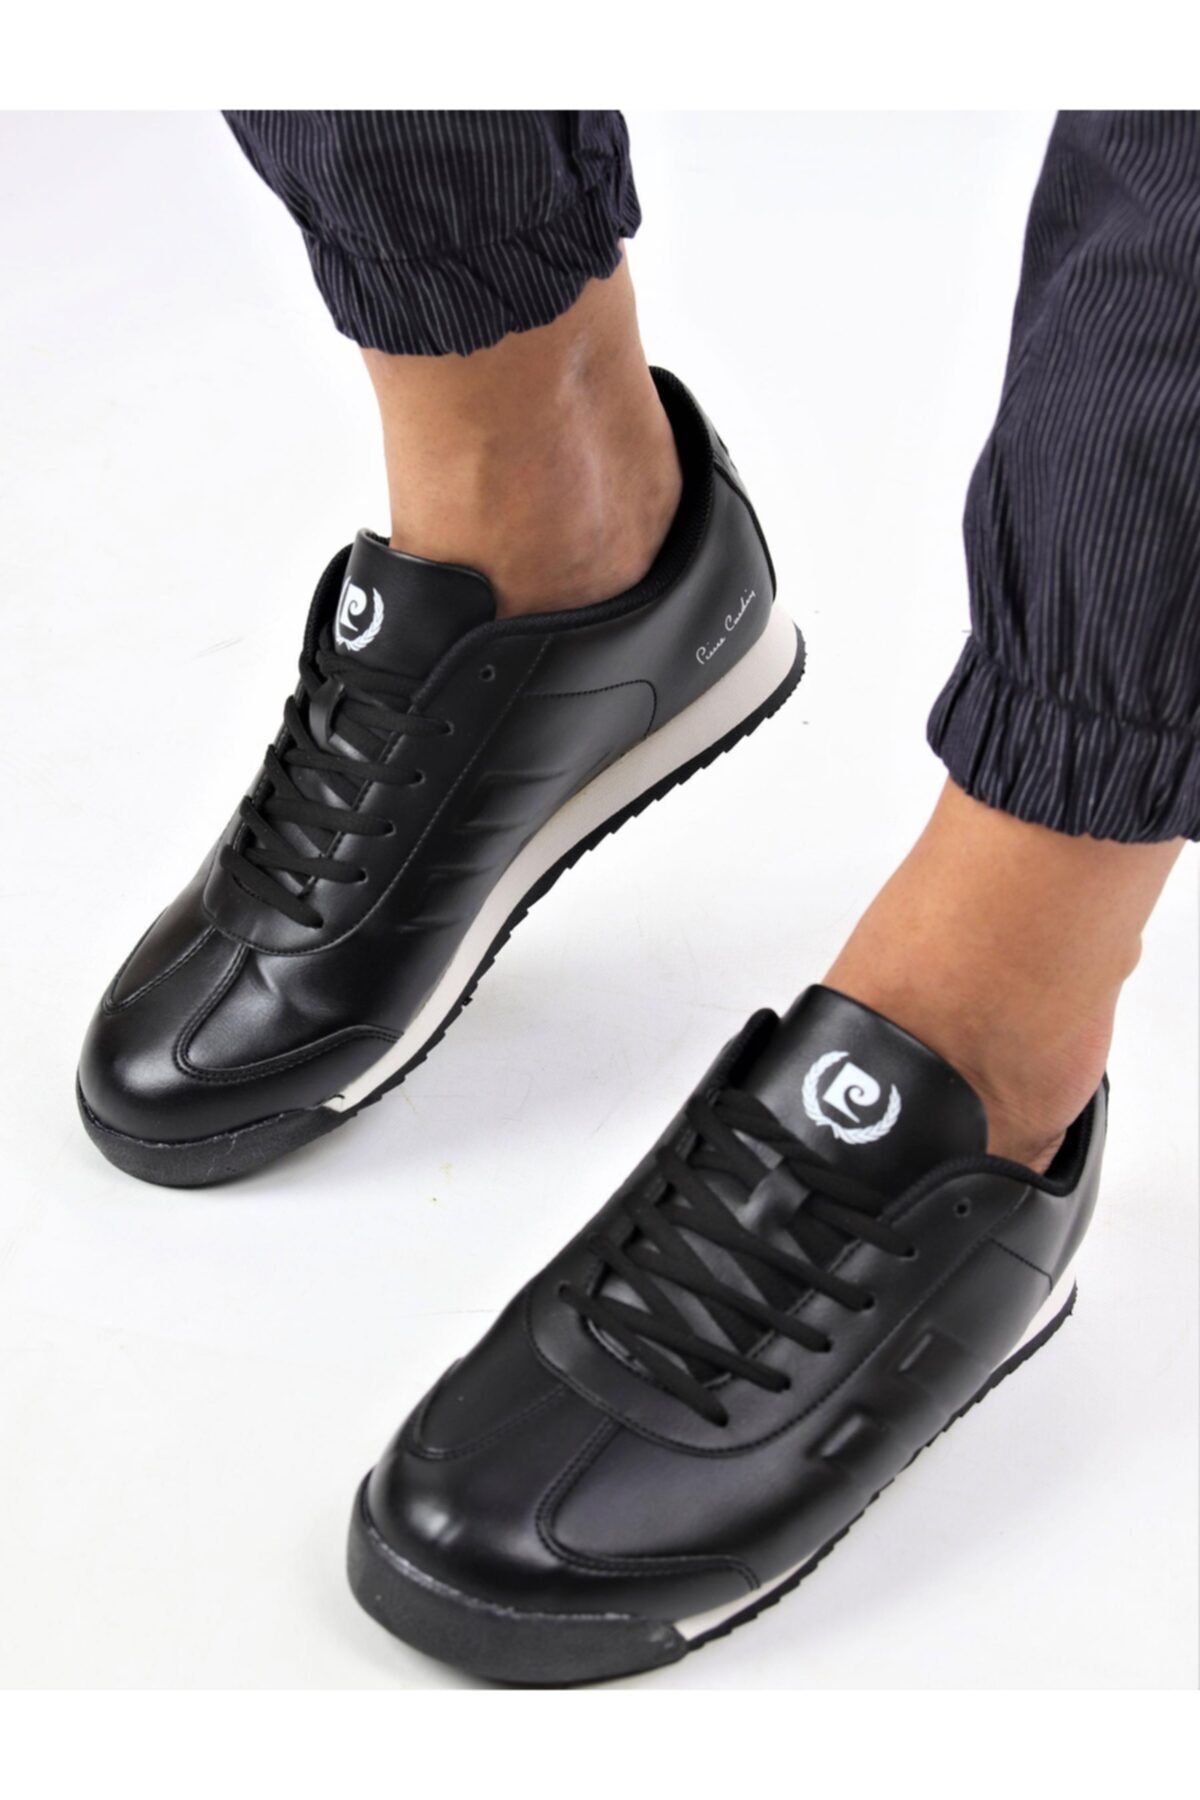 Pierre Cardin Erkek Günlük Sneaker Ayakkabı (Pc-30484)